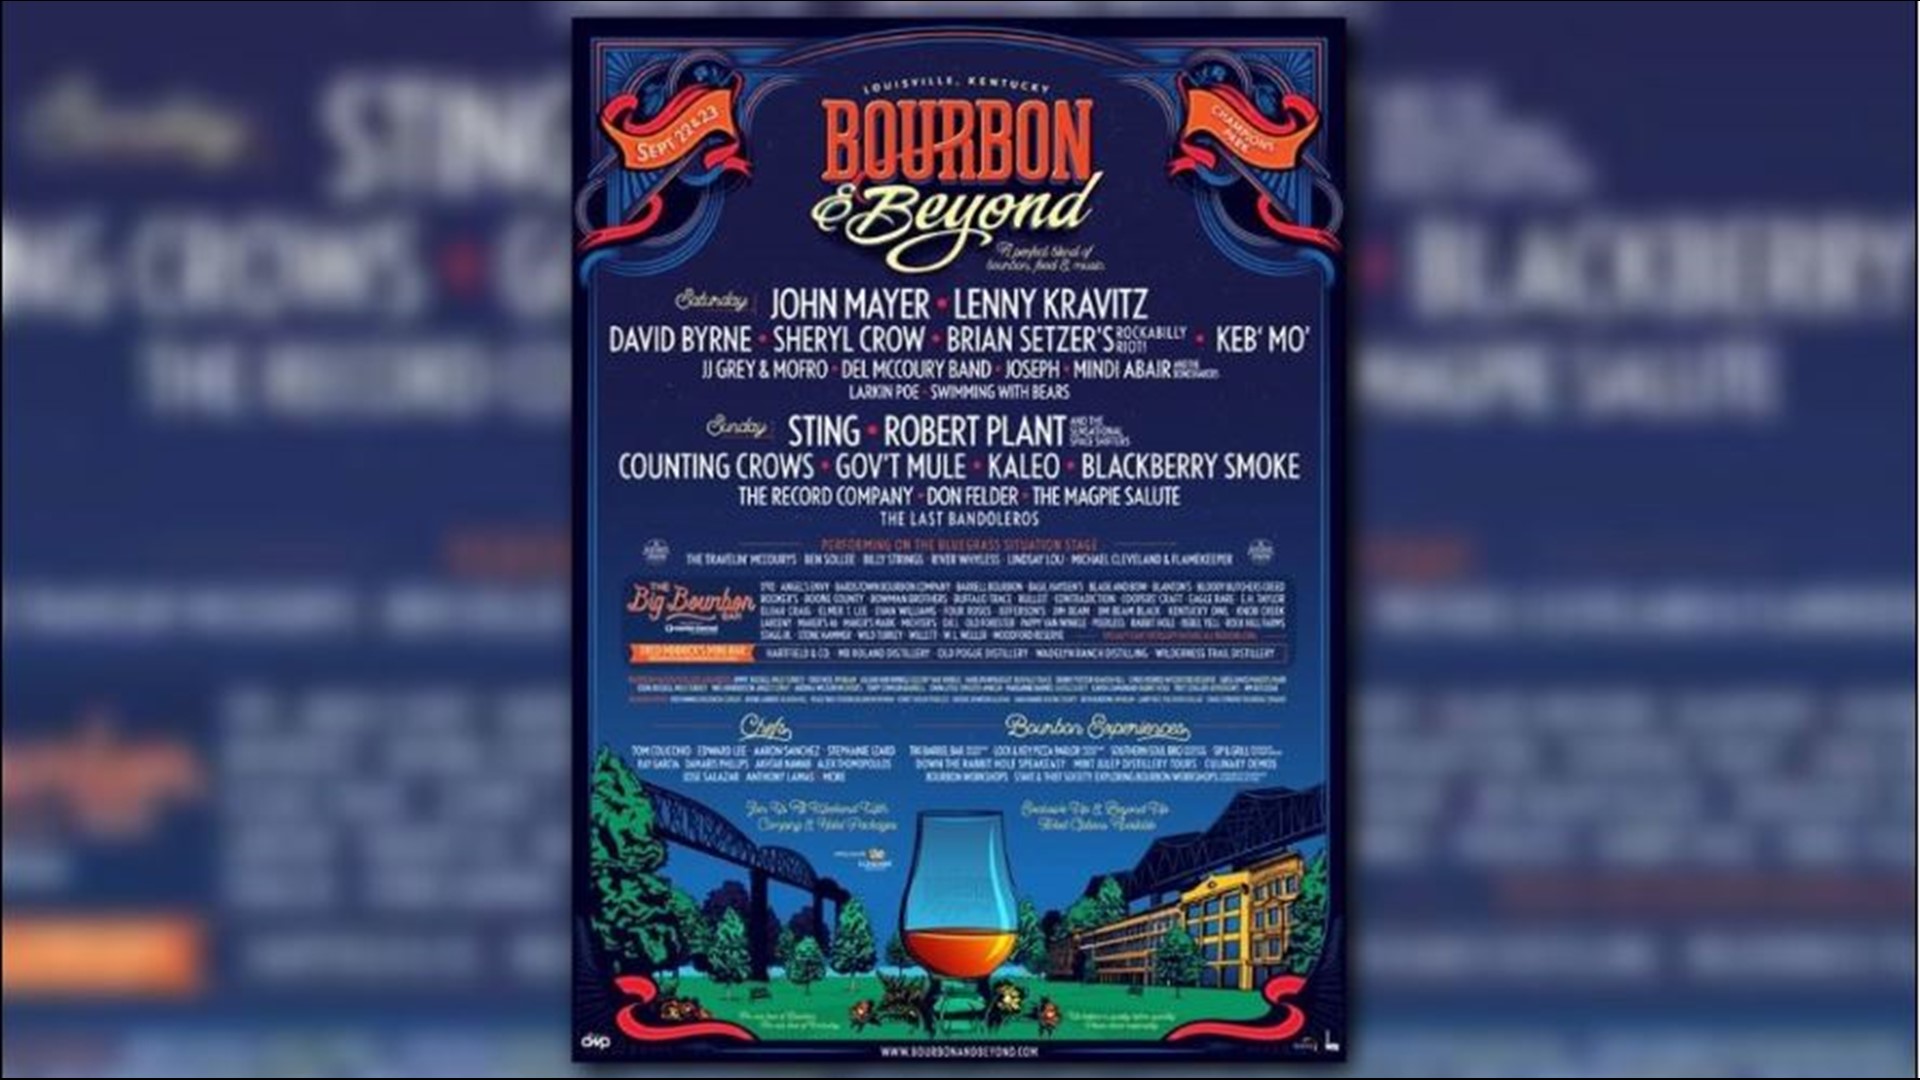 Bourbon & Beyond announces music lineup for world’s largest bourbon